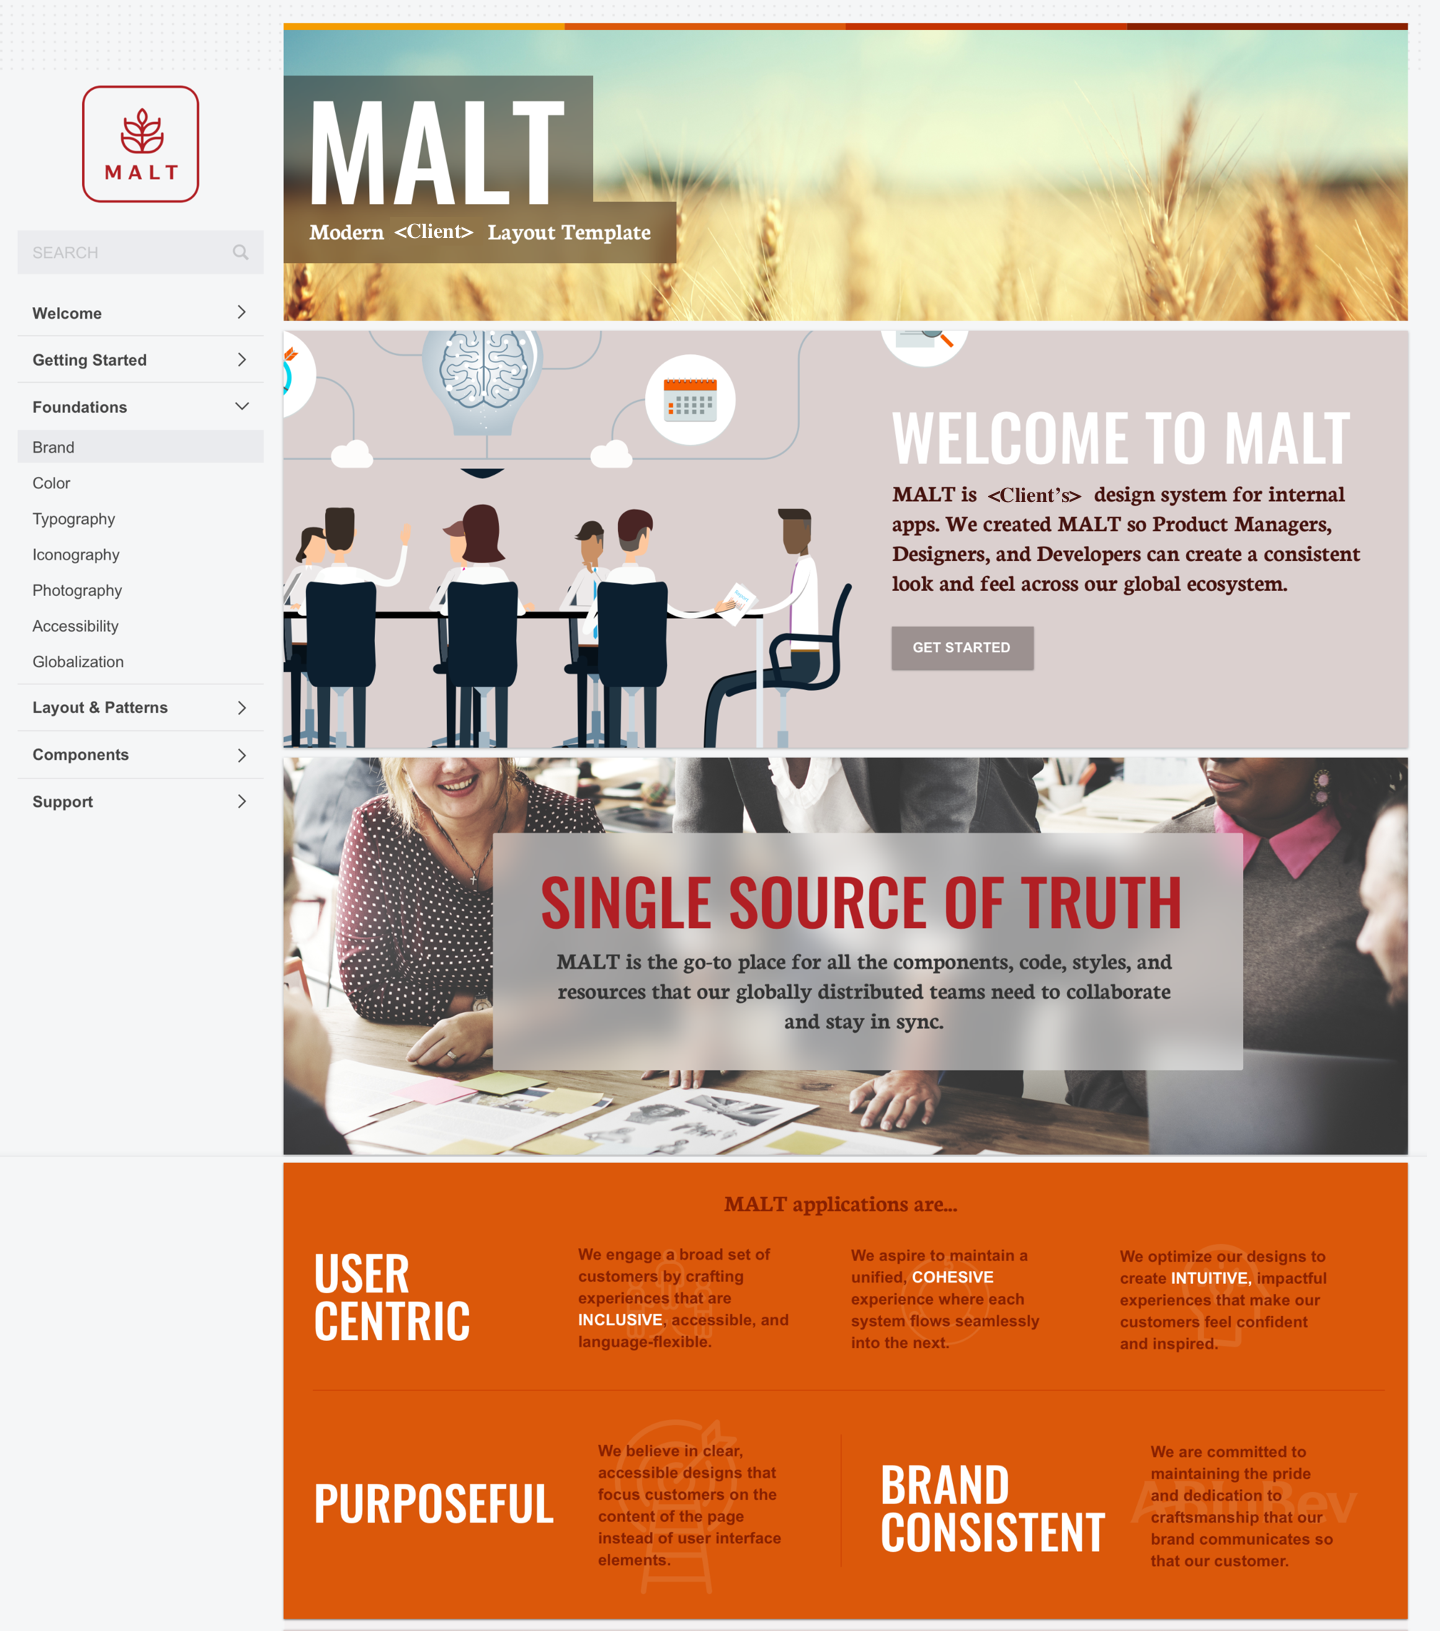 MALT Design System - Home page